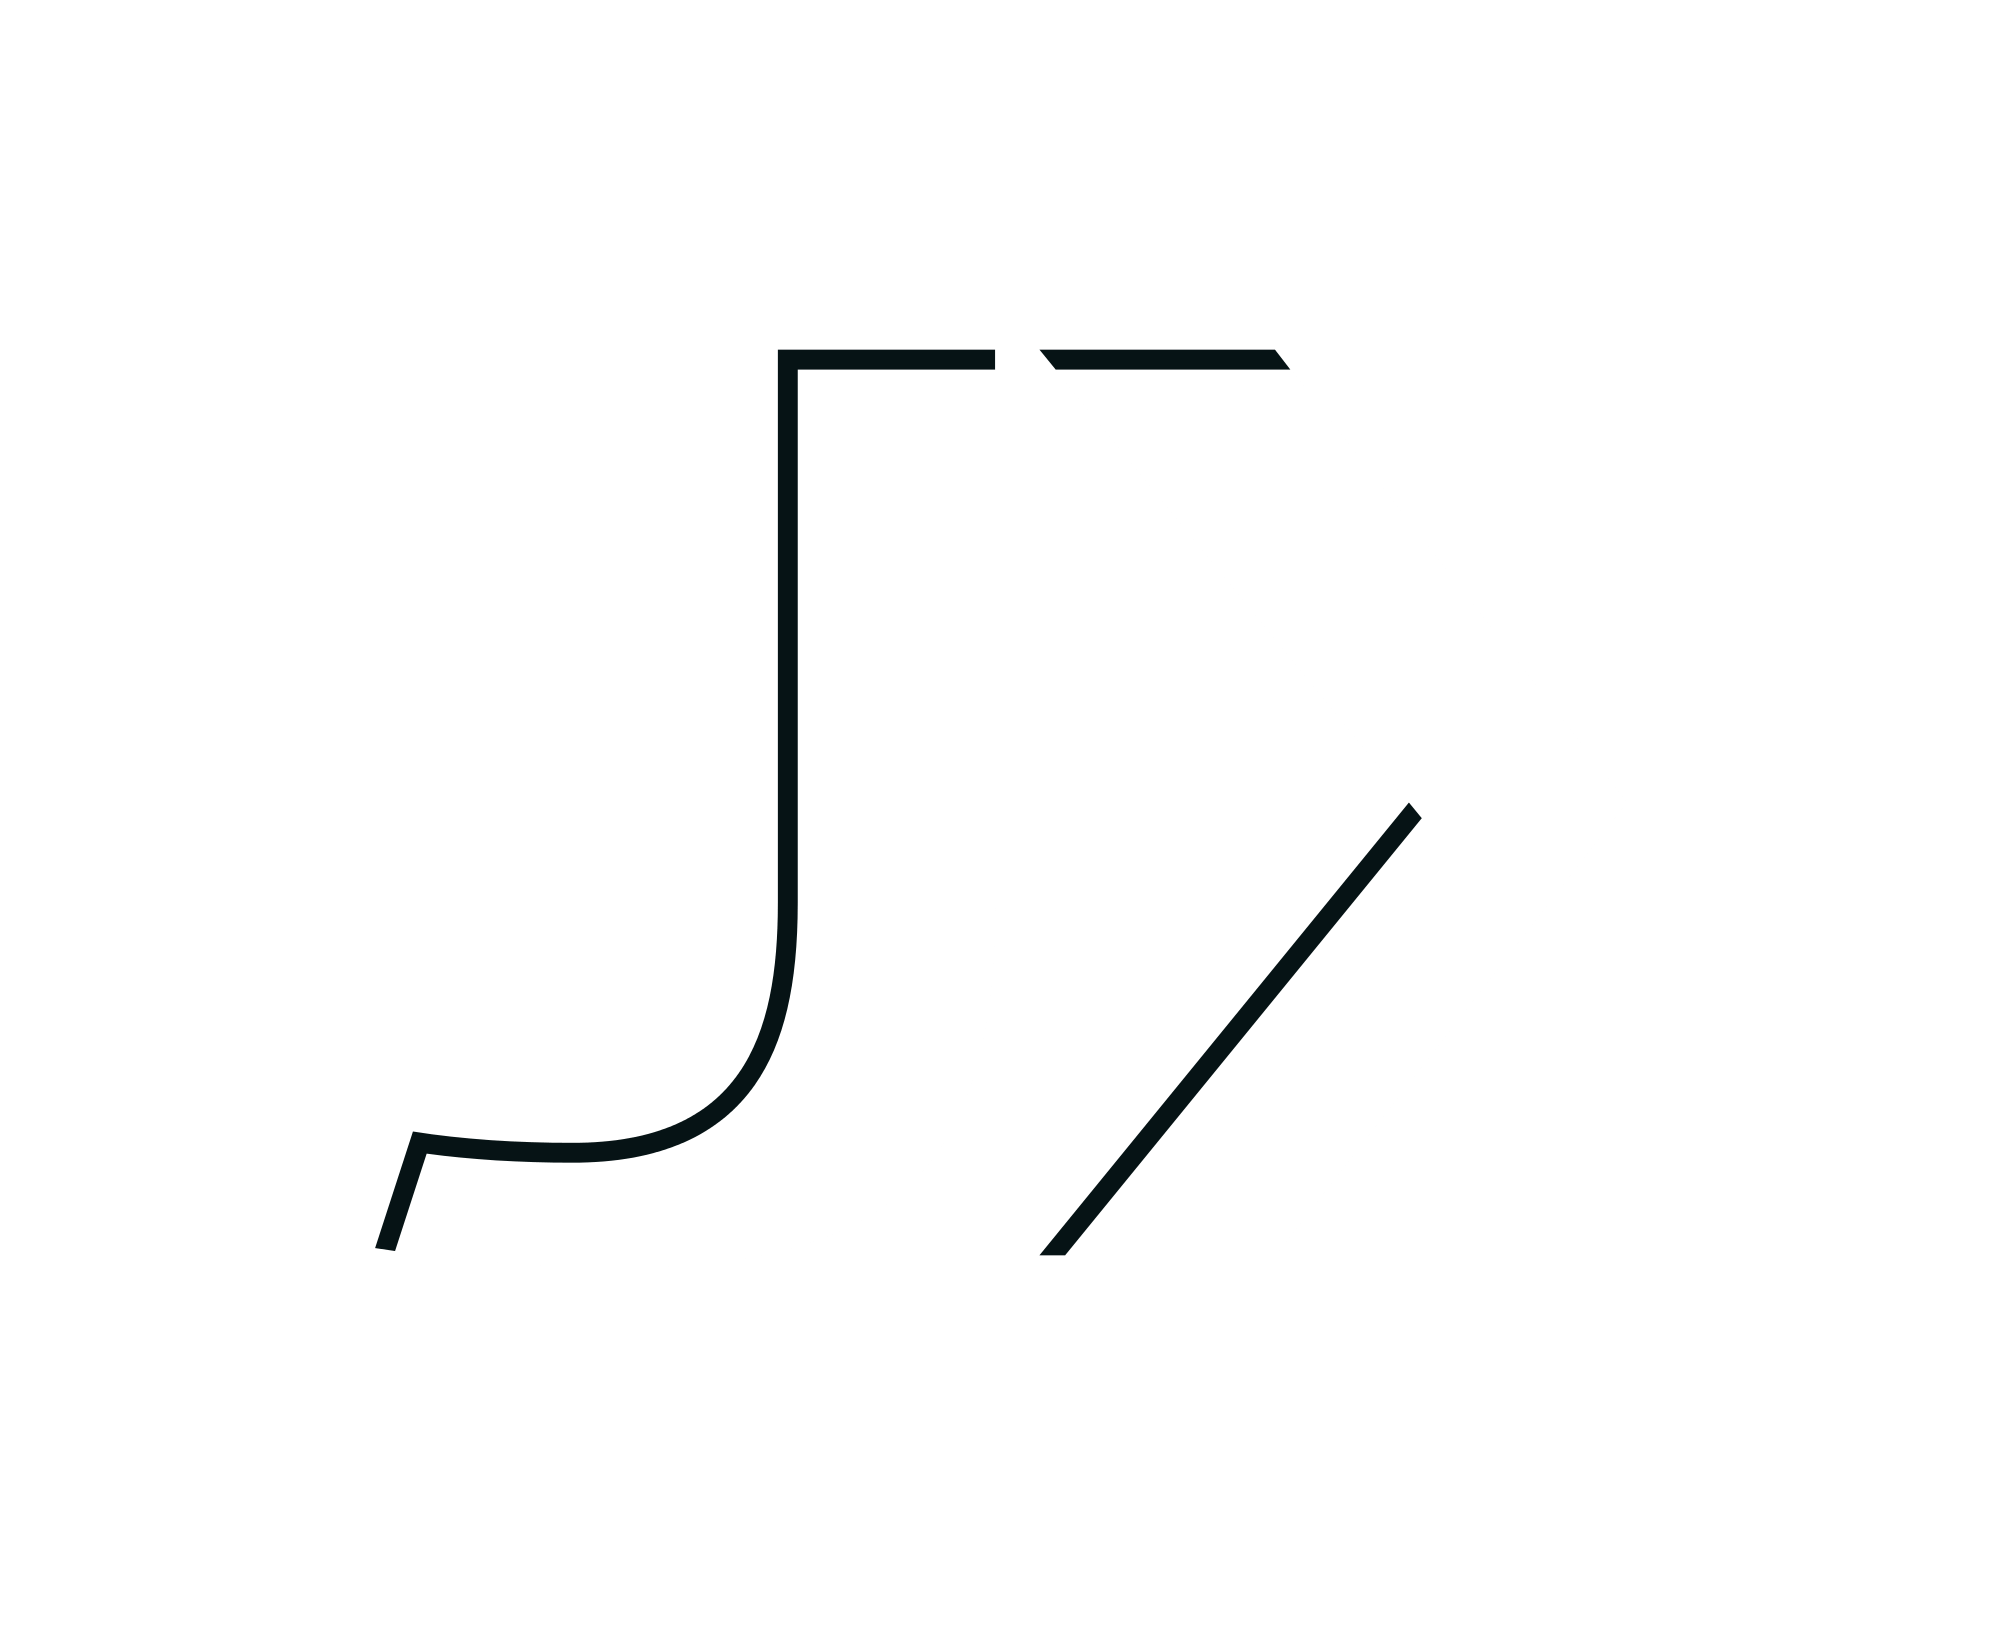 JX Logo - File:JX GROUP logo.svg - Wikimedia Commons